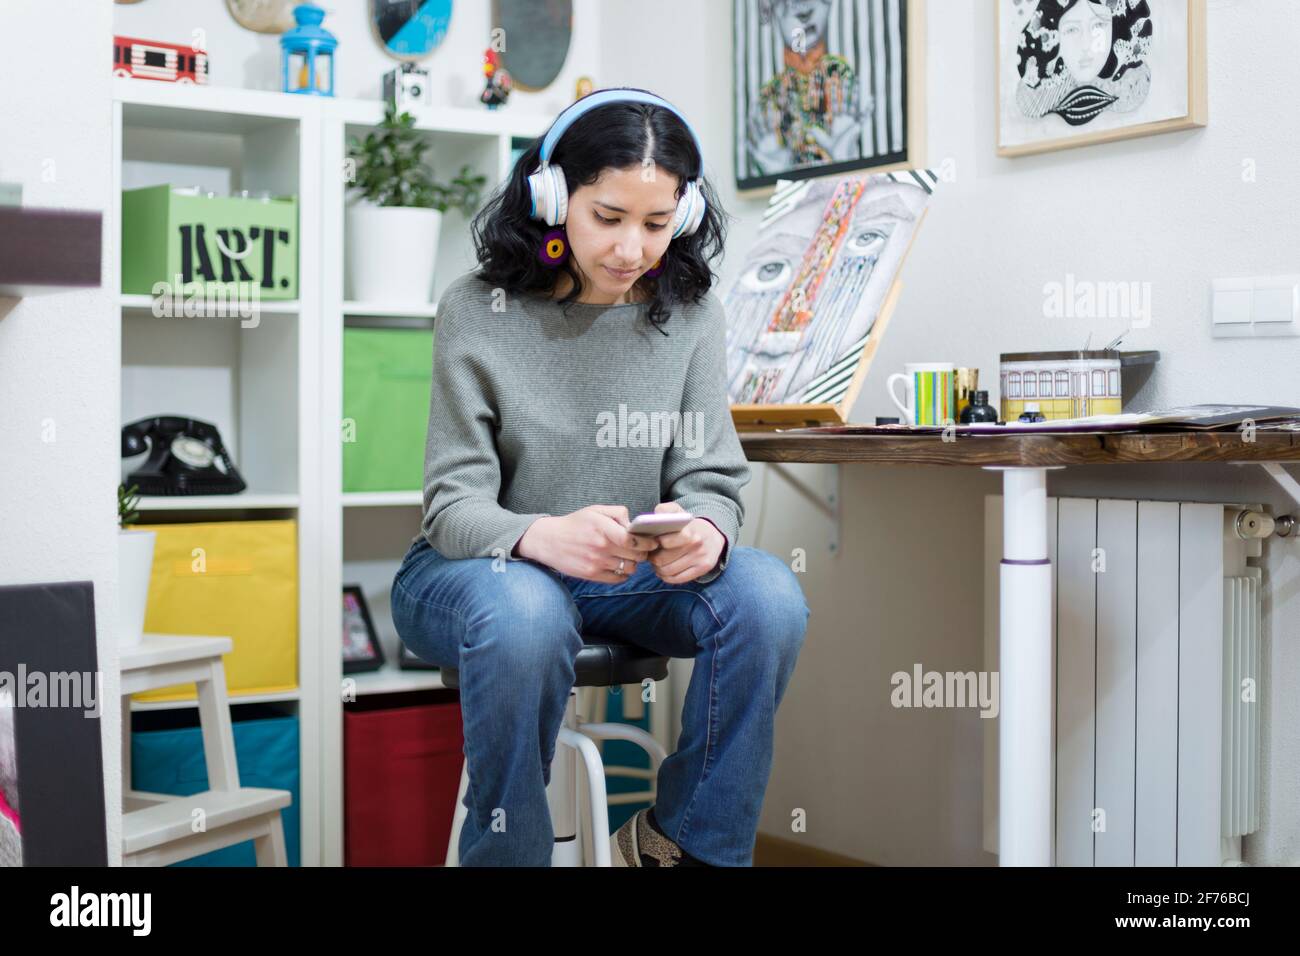 Retrato de una joven estudiante de arte usando su teléfono móvil mientras estaba en su estudio. Espacio para texto. Foto de stock